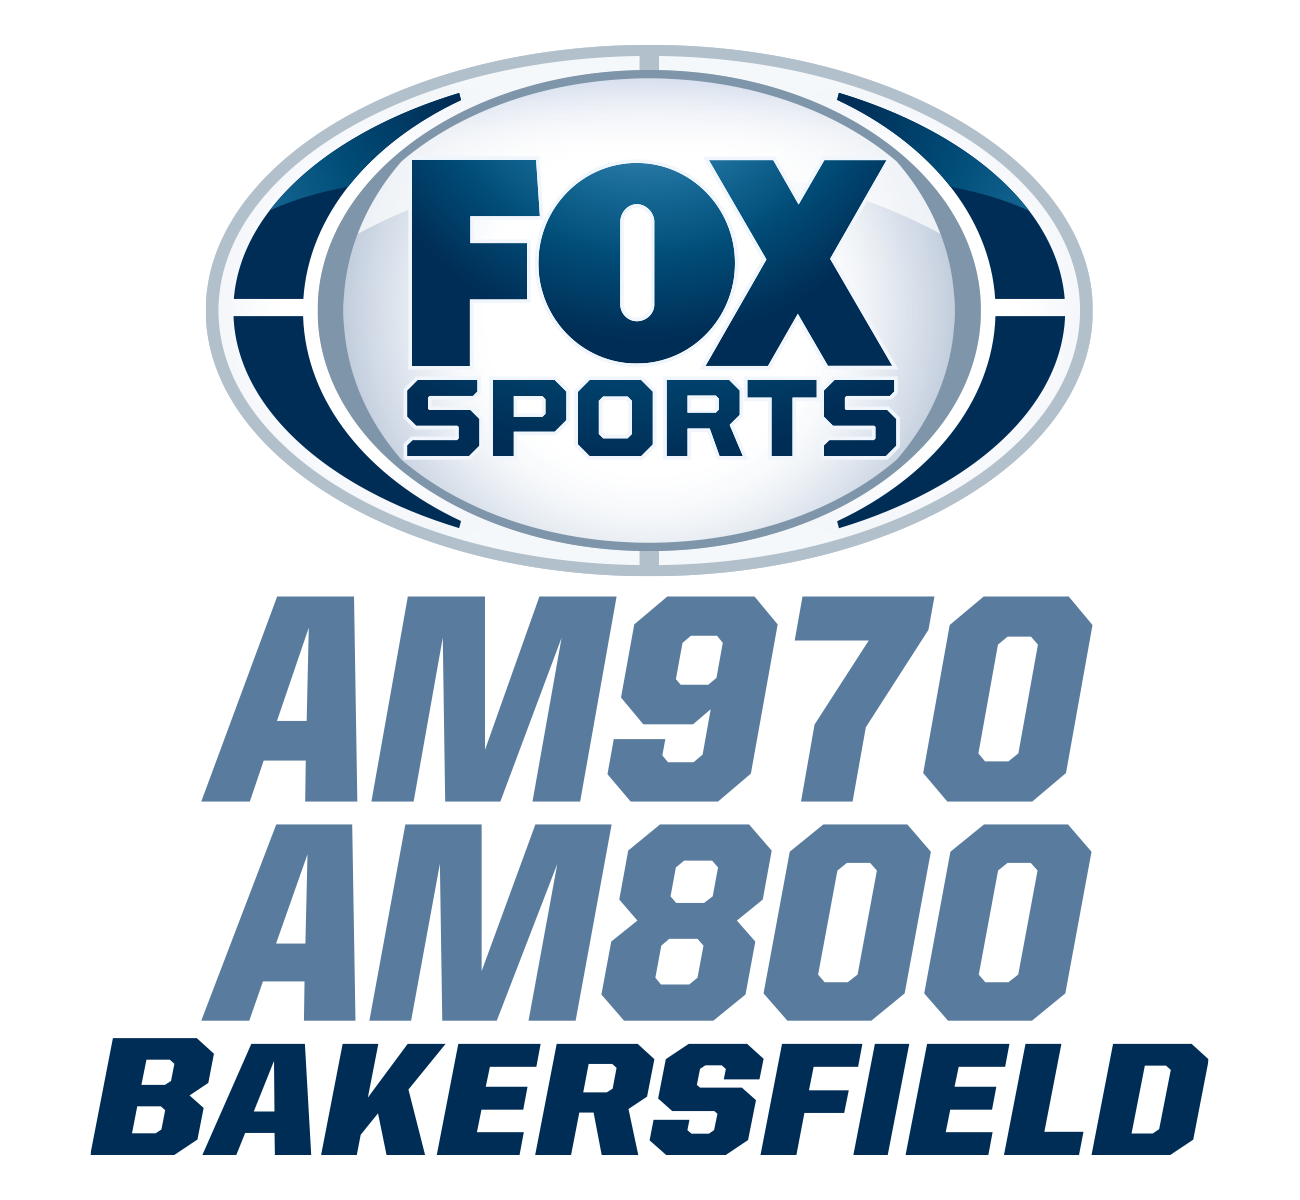 Fox Sports Radio 970am and 800am